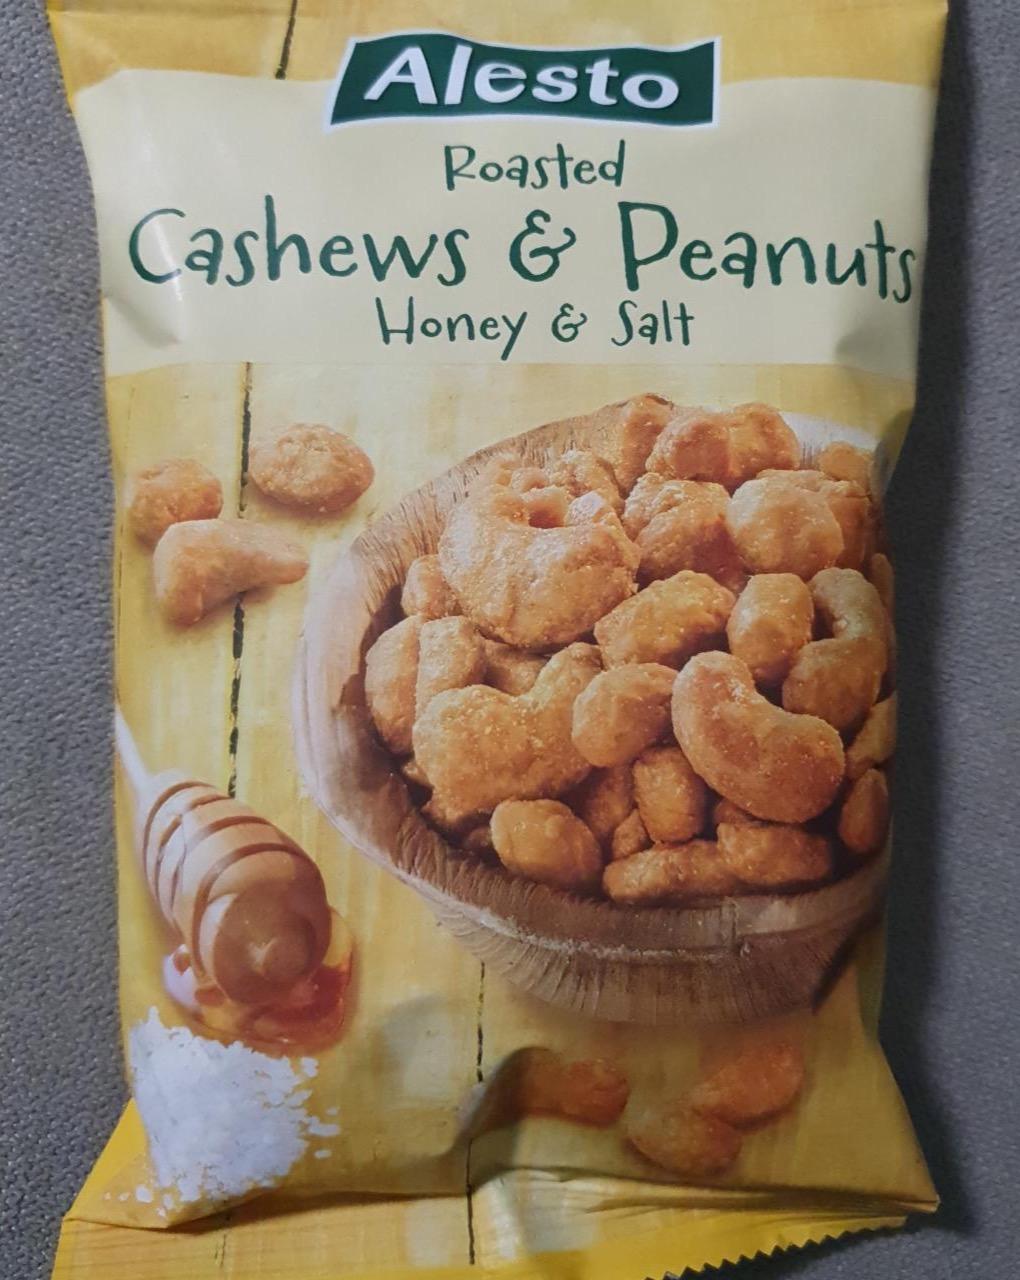 Képek - Roasted cashews & peanuts Honey & salt Alesto